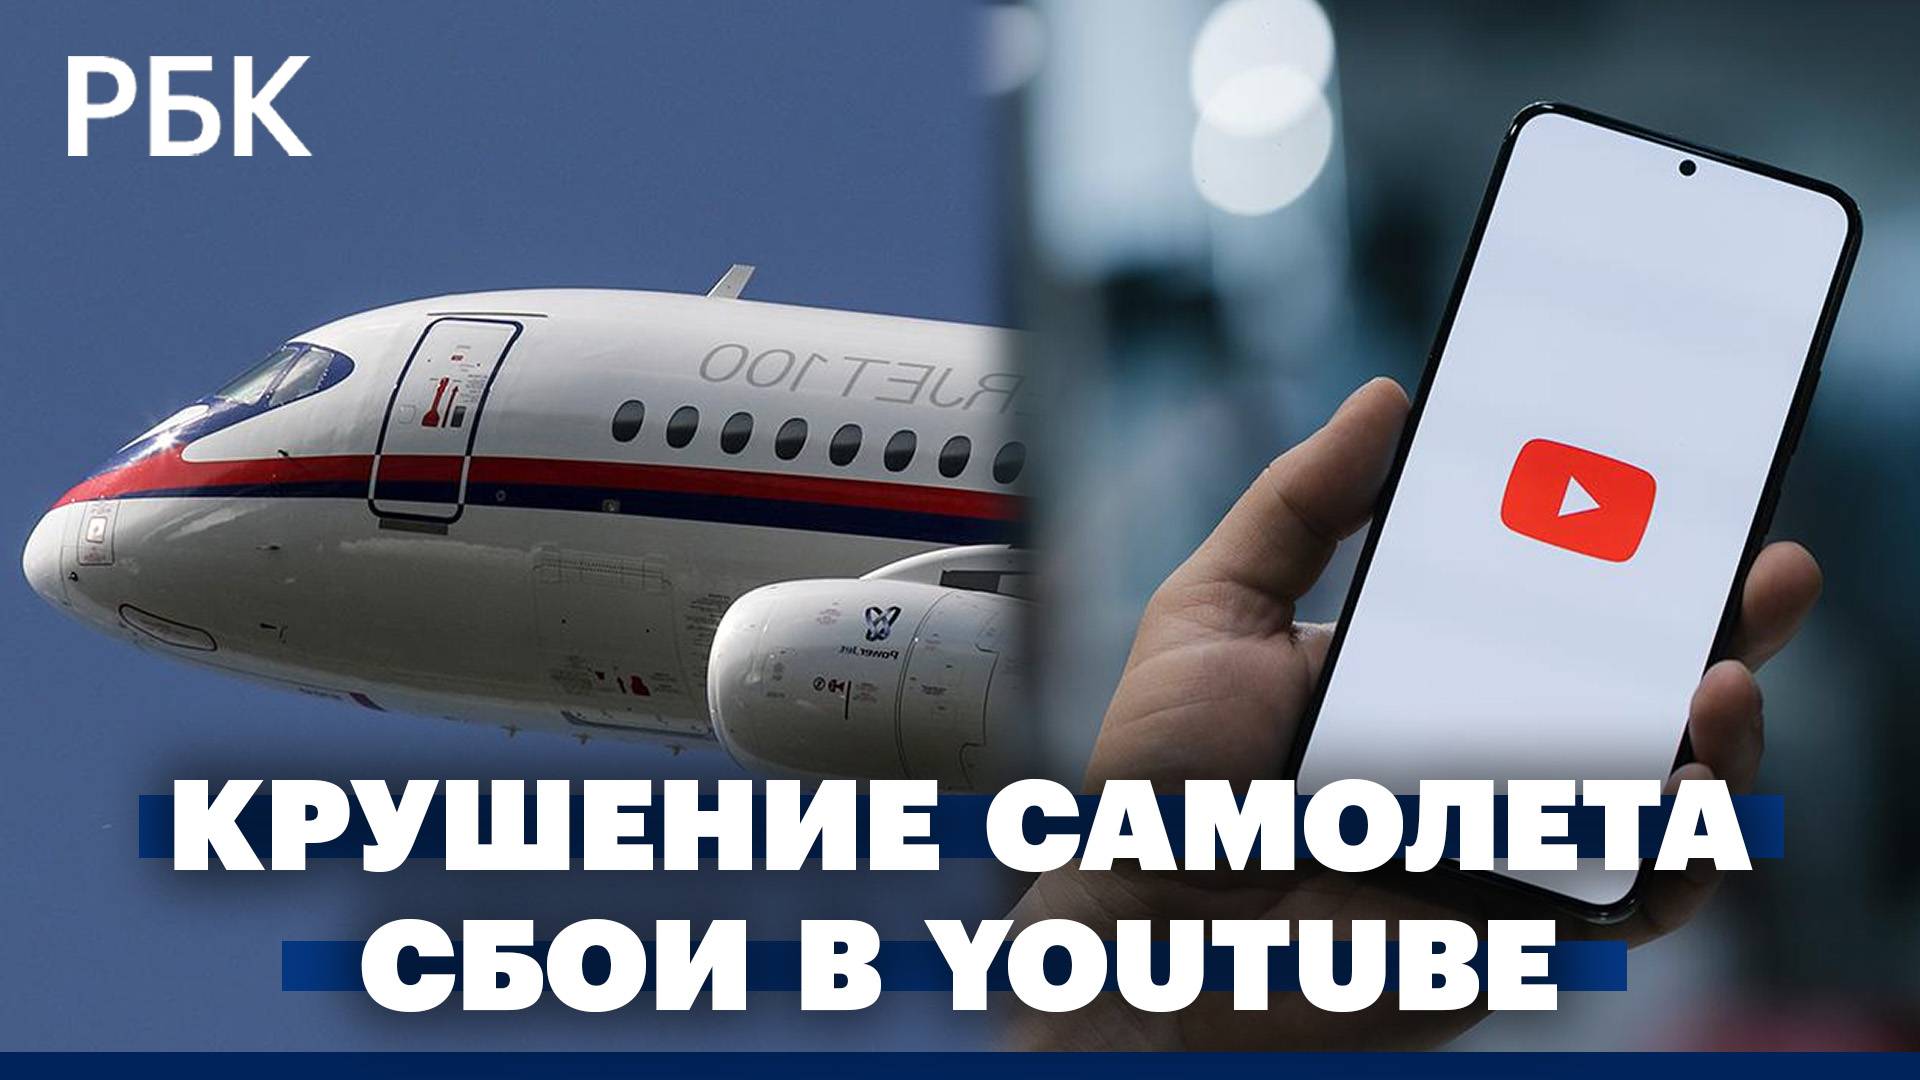 Sukhoi Superjet 100 потерпел крушение в Подмосковье. Сбои в работе YouTube